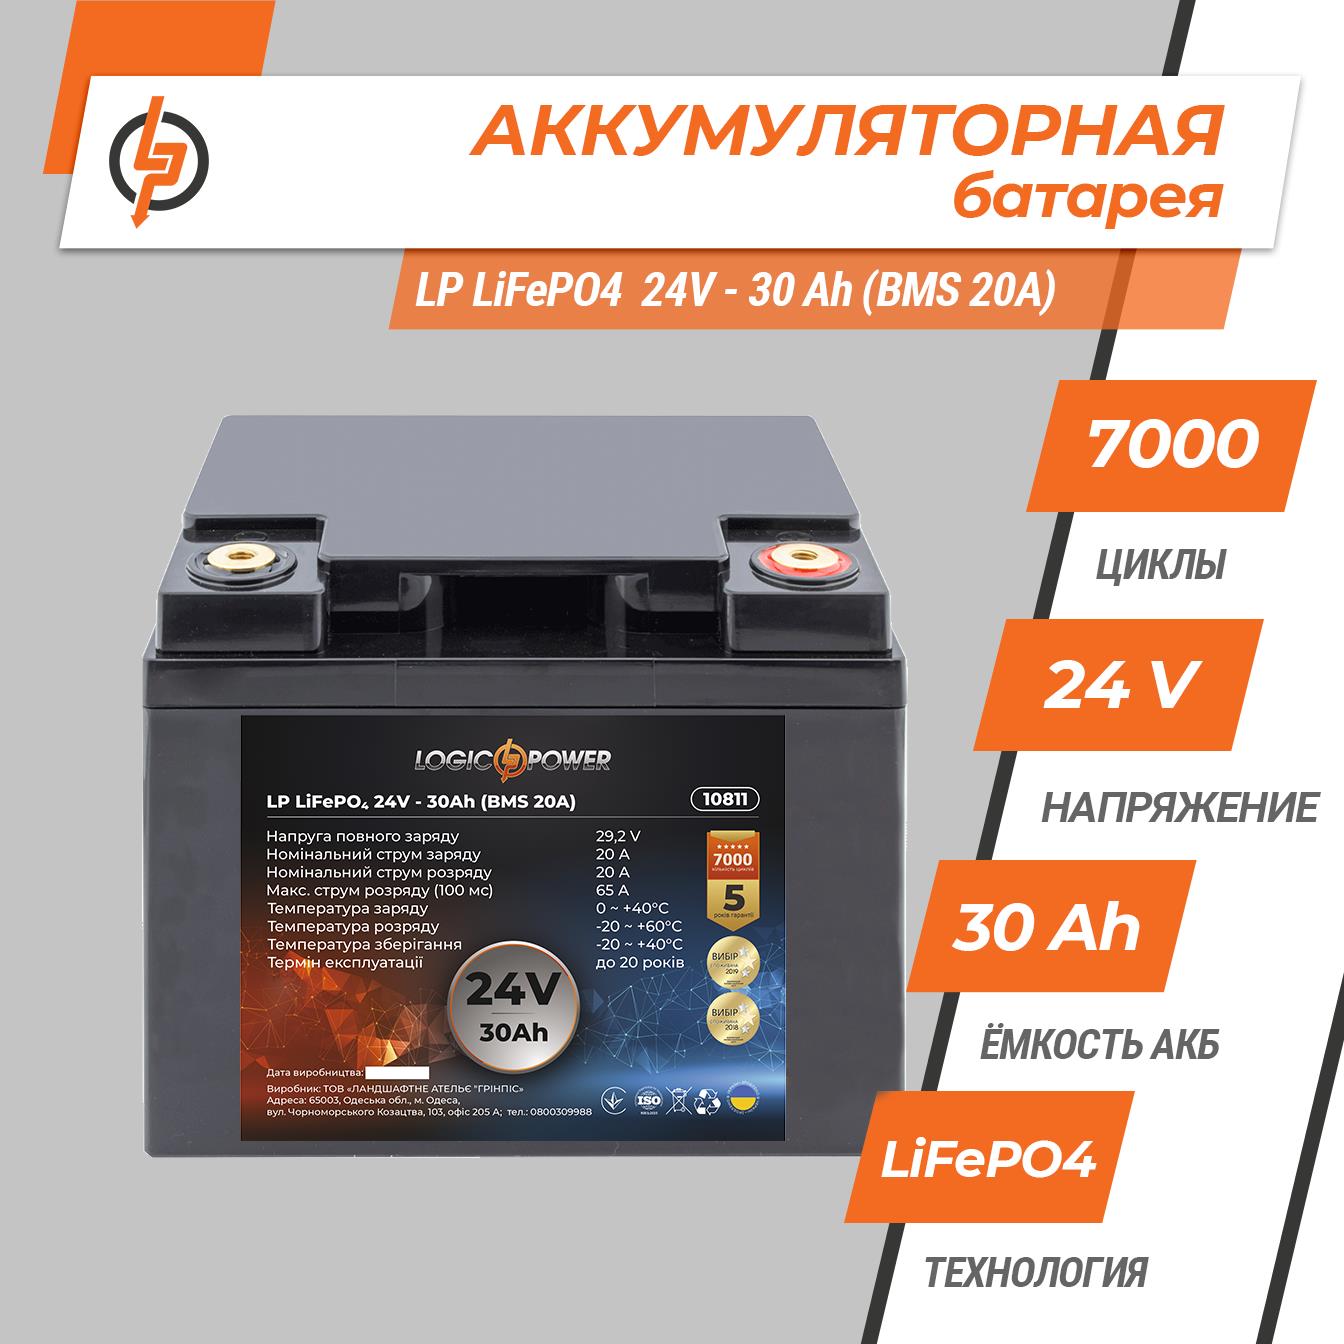 Аккумулятор литий-железо-фосфатный LogicPower LP LiFePO4 24V - 30 Ah (BMS 20A) пластик (10811) цена 12183.00 грн - фотография 2